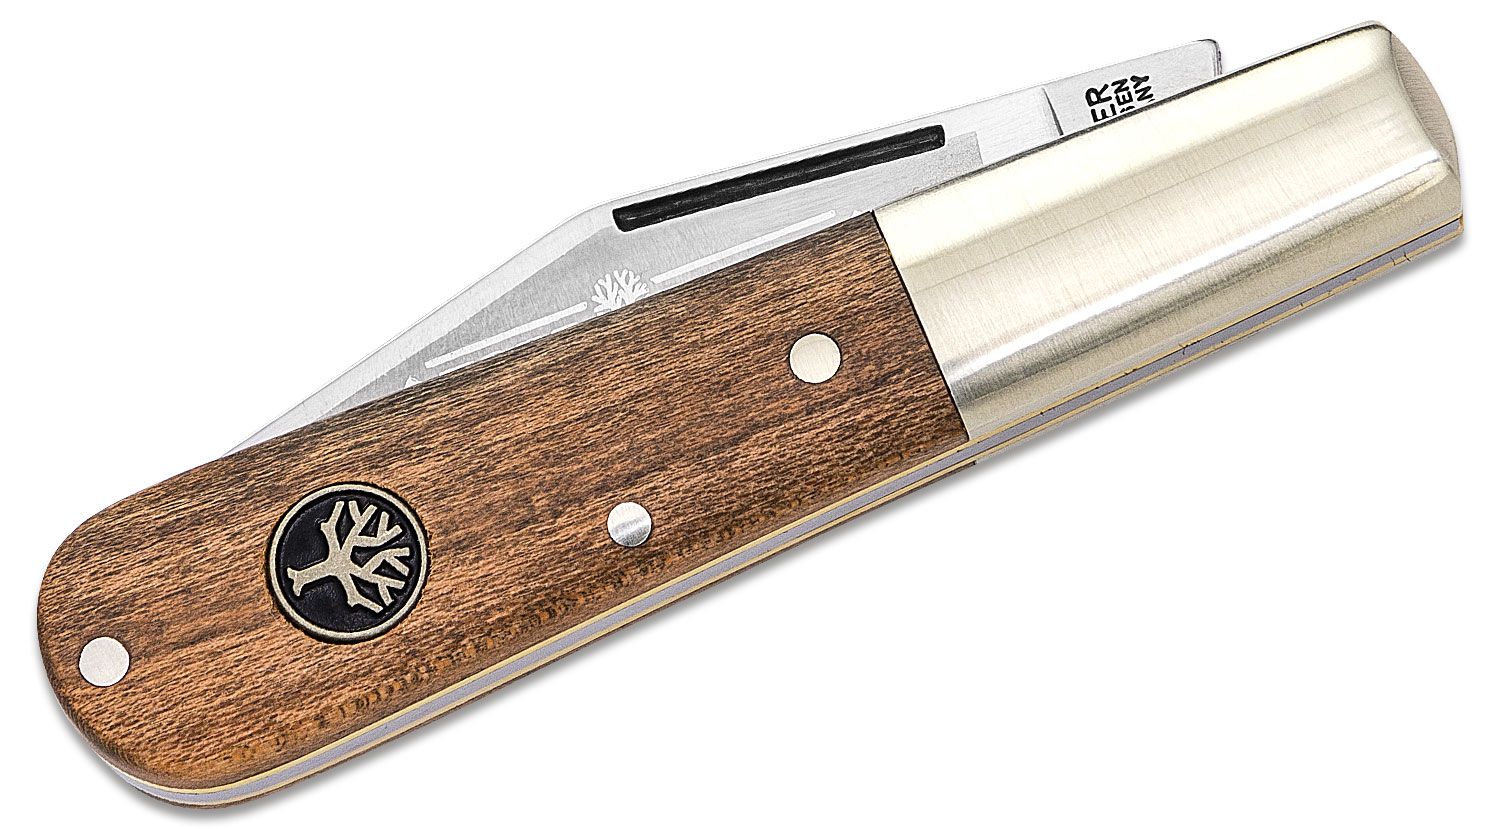 Boker Core Bird's Beak Peeling Knife 2.75 Blade, Walnut Wood Handle -  KnifeCenter - 130725